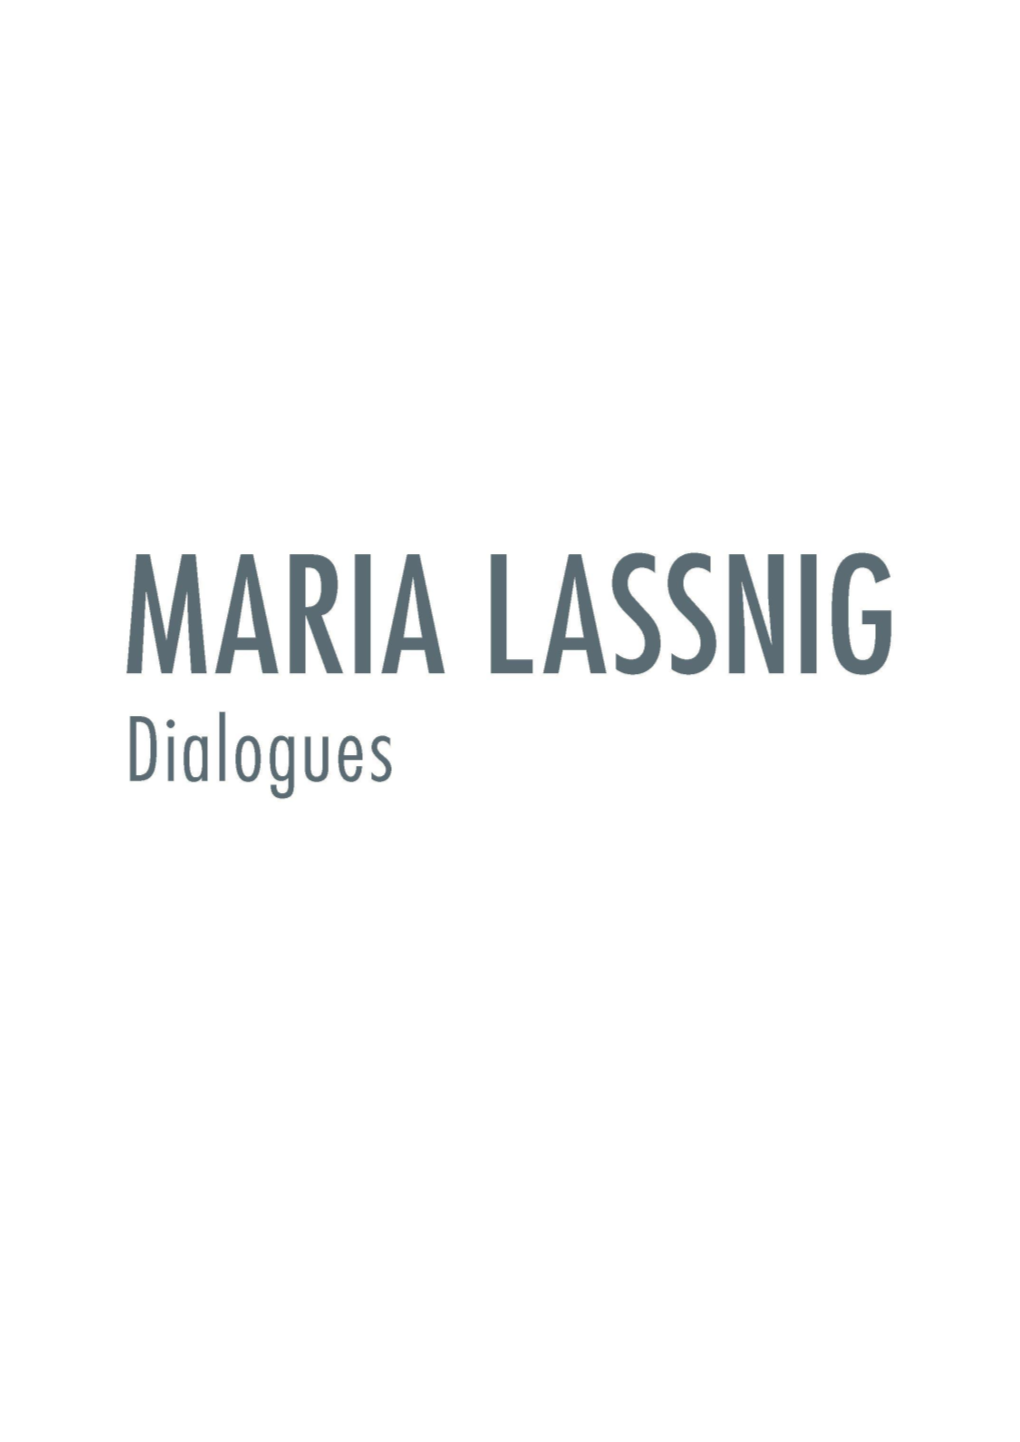 Presskit Maria Lassnig.Pdf